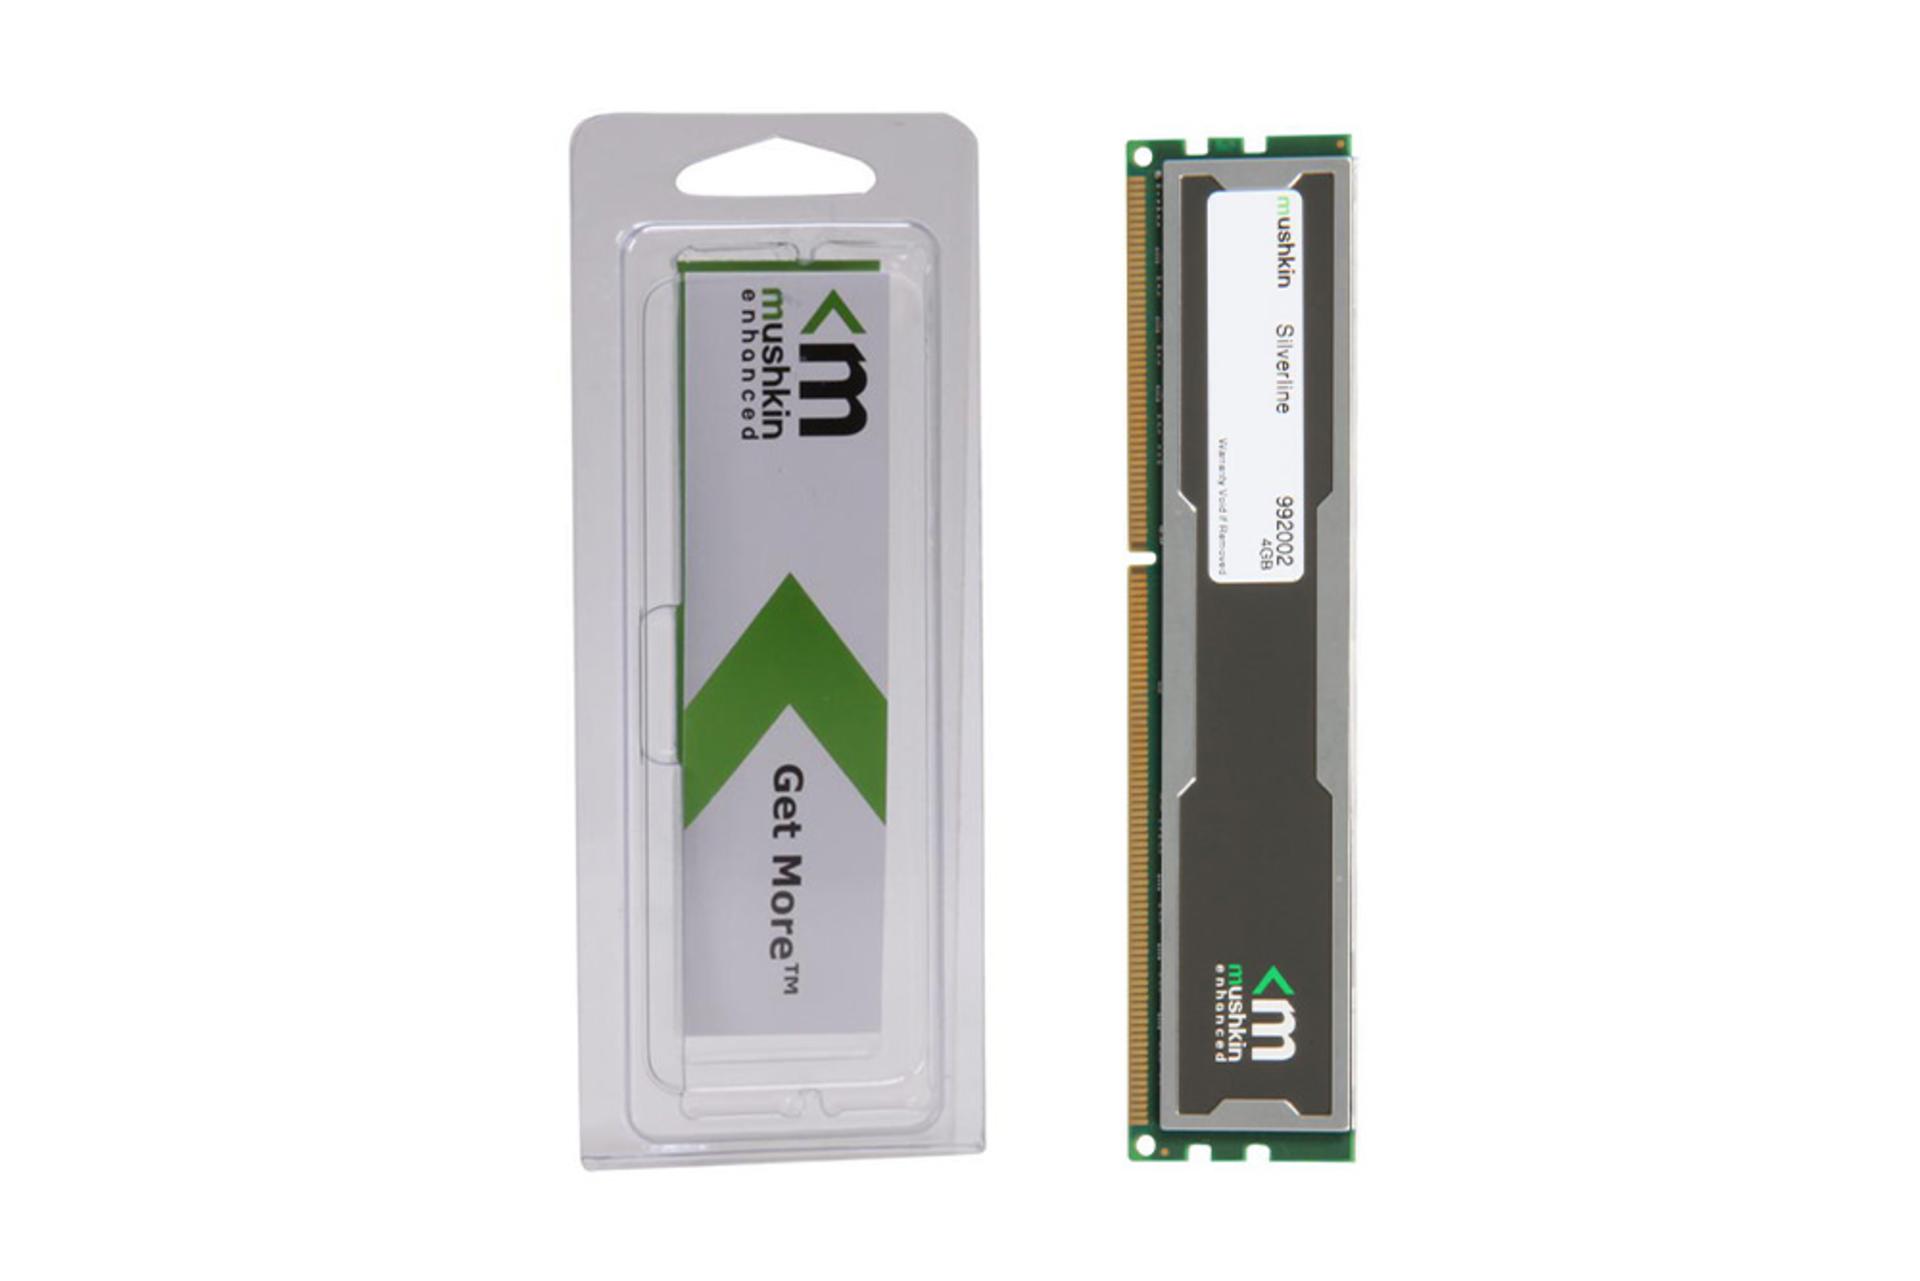  رم ماشکین Silverline ظرفیت 4 گیگابایت از نوع DDR3-1333 بسته بندی